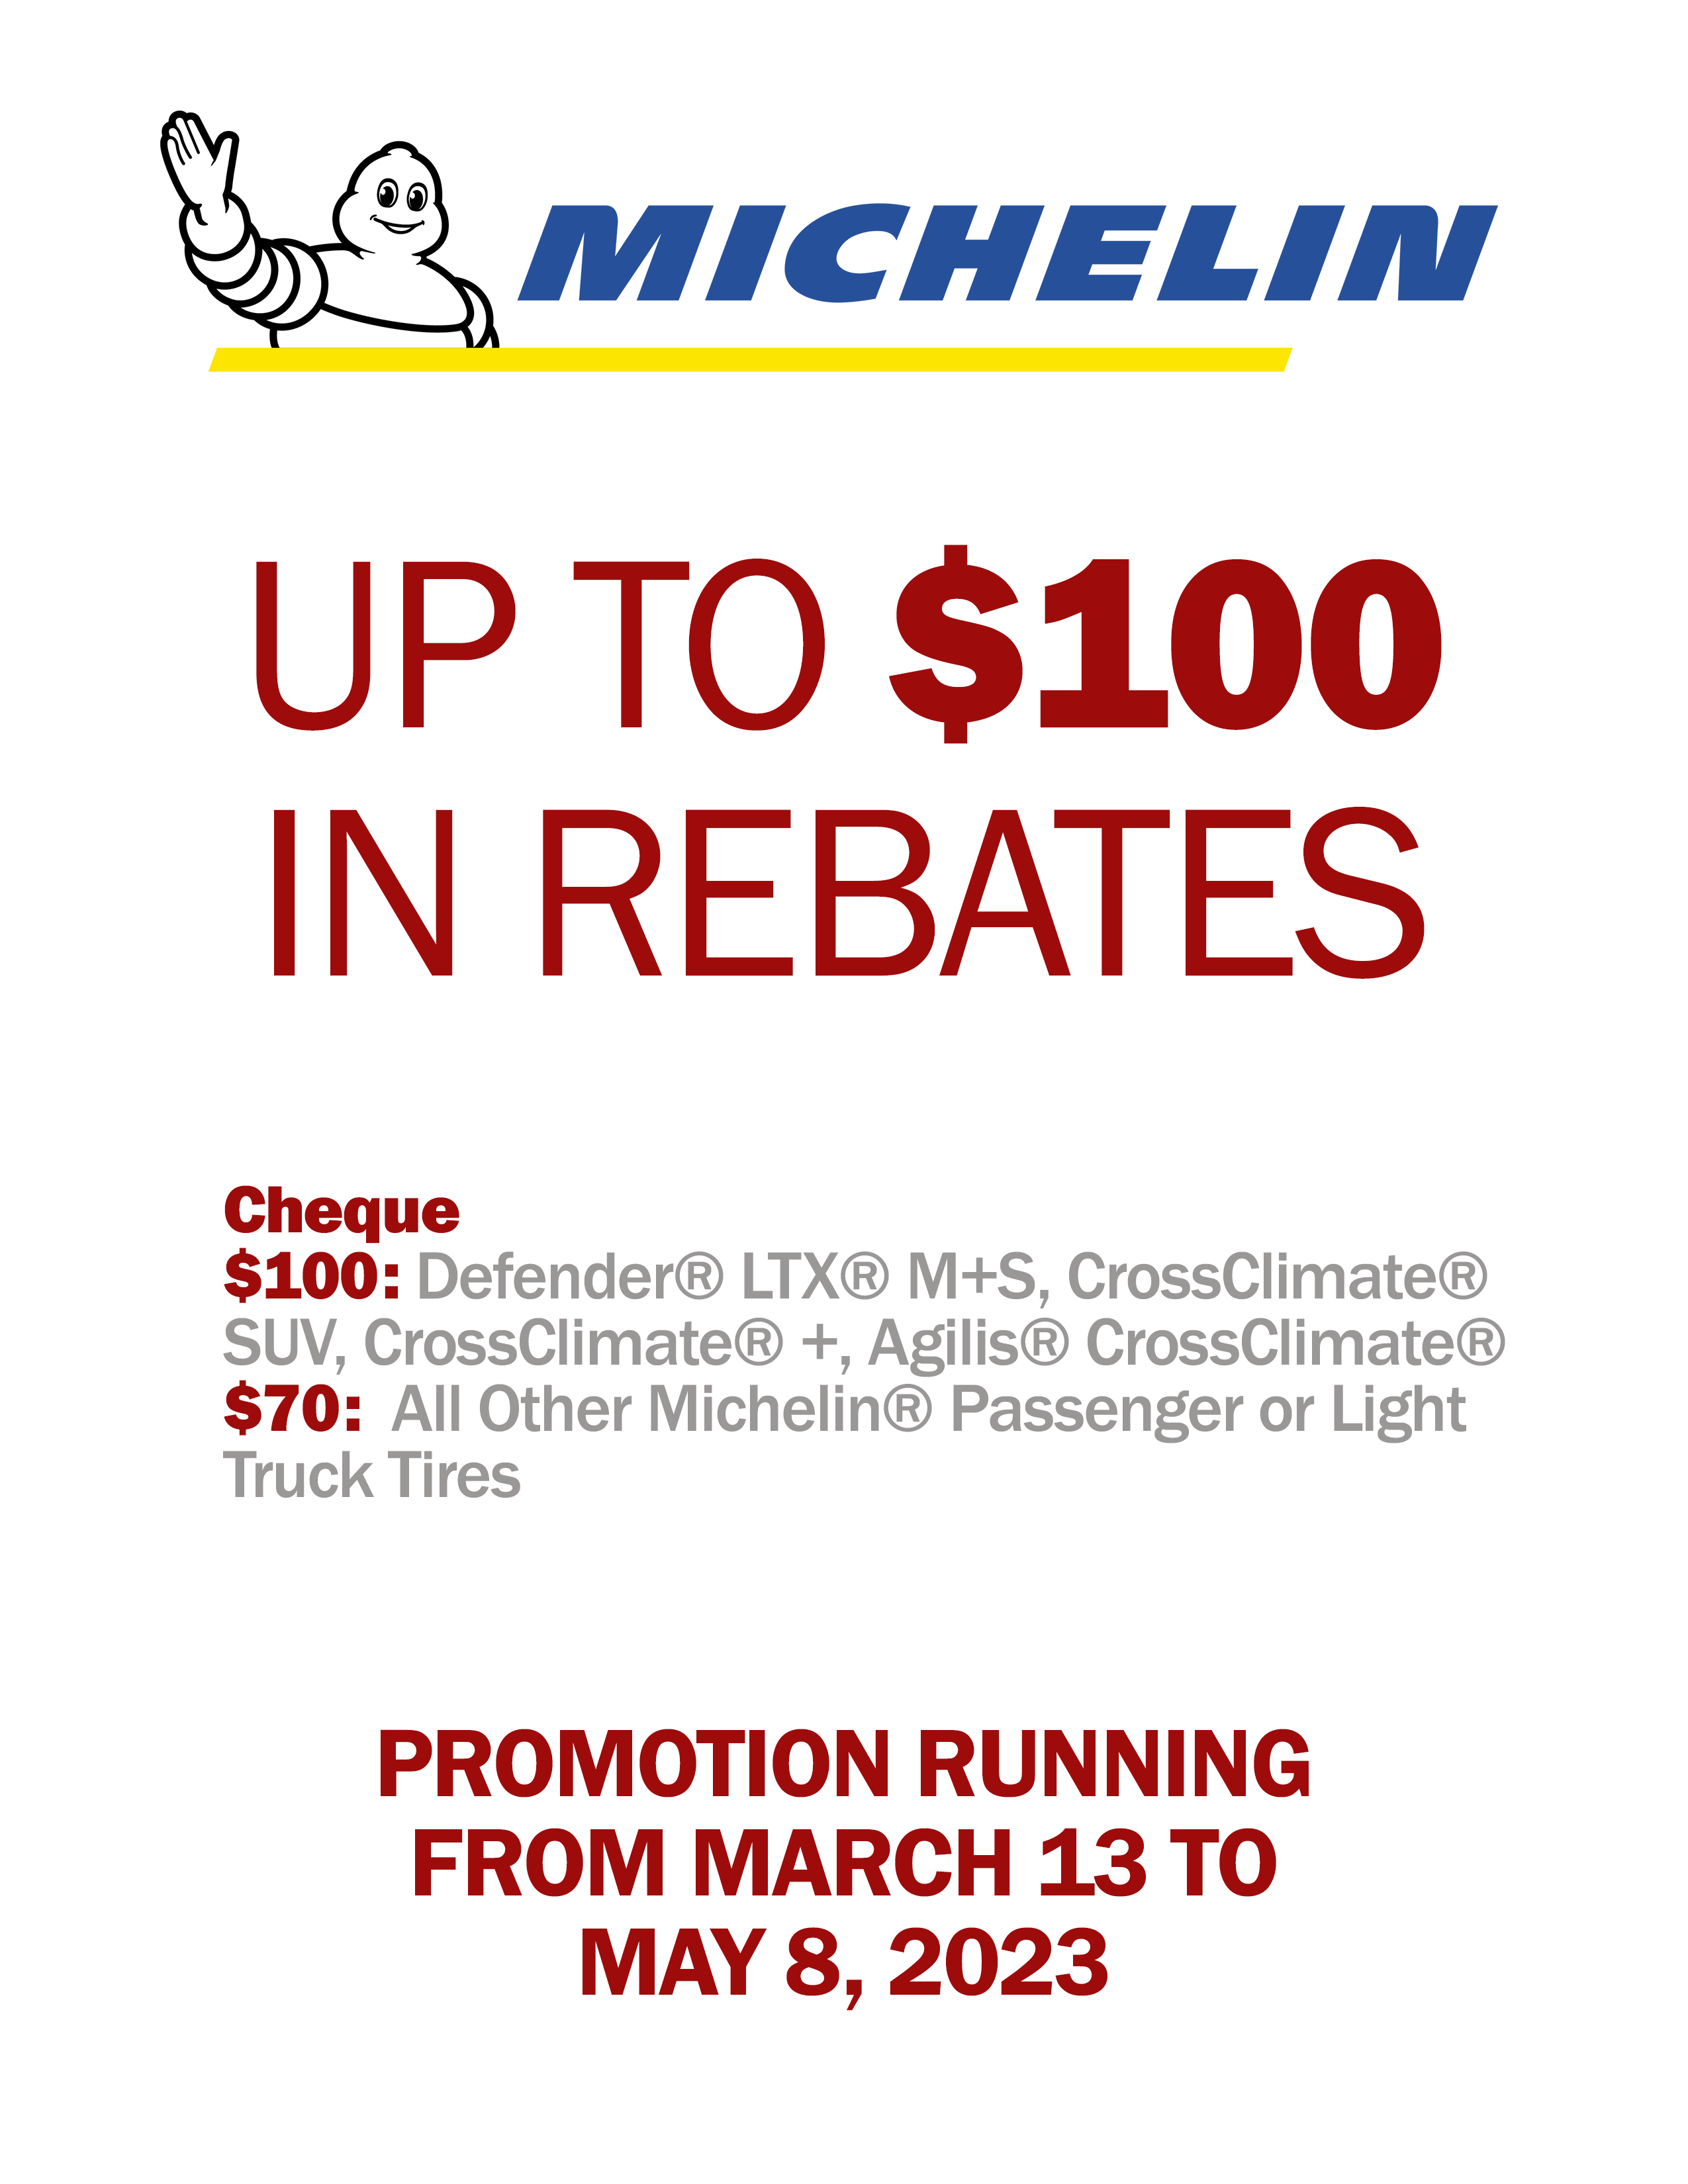 Michelin Rebates 2023